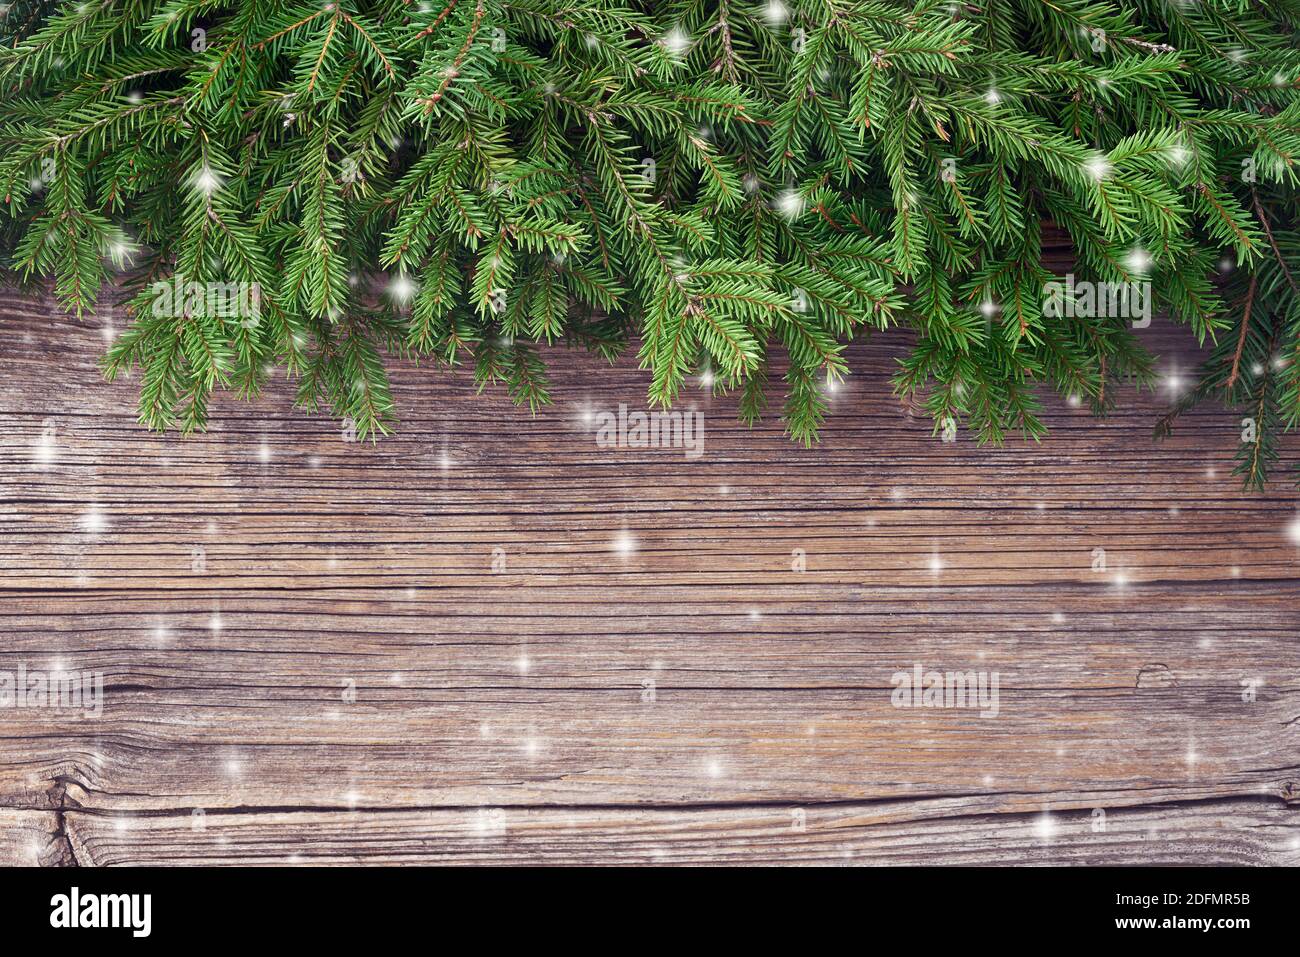 Weihnachten Hintergrund. Weihnachtstanne Zweige auf alten hölzernen Hintergrund. Speicherplatz kopieren. Stockfoto